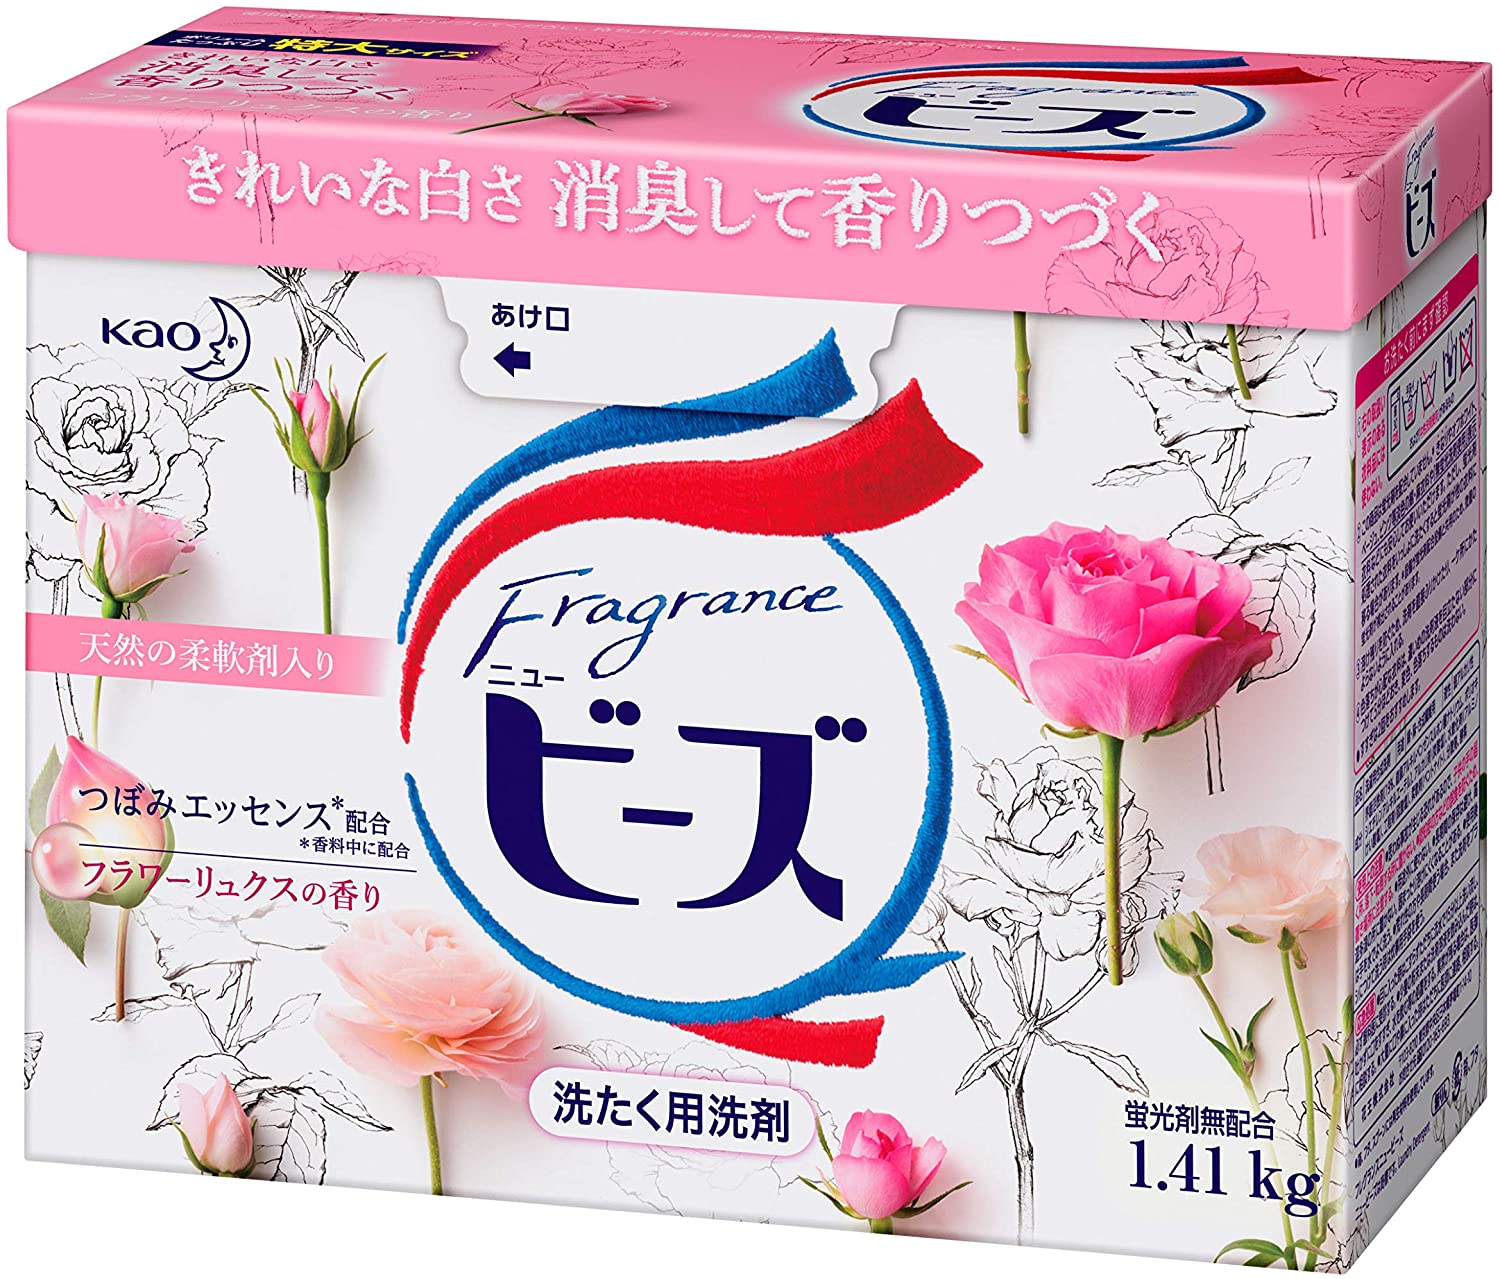 Стиральный порошок с ароматом розы Fragrance New Beads Detergent Powder Kao, 1,4 кг